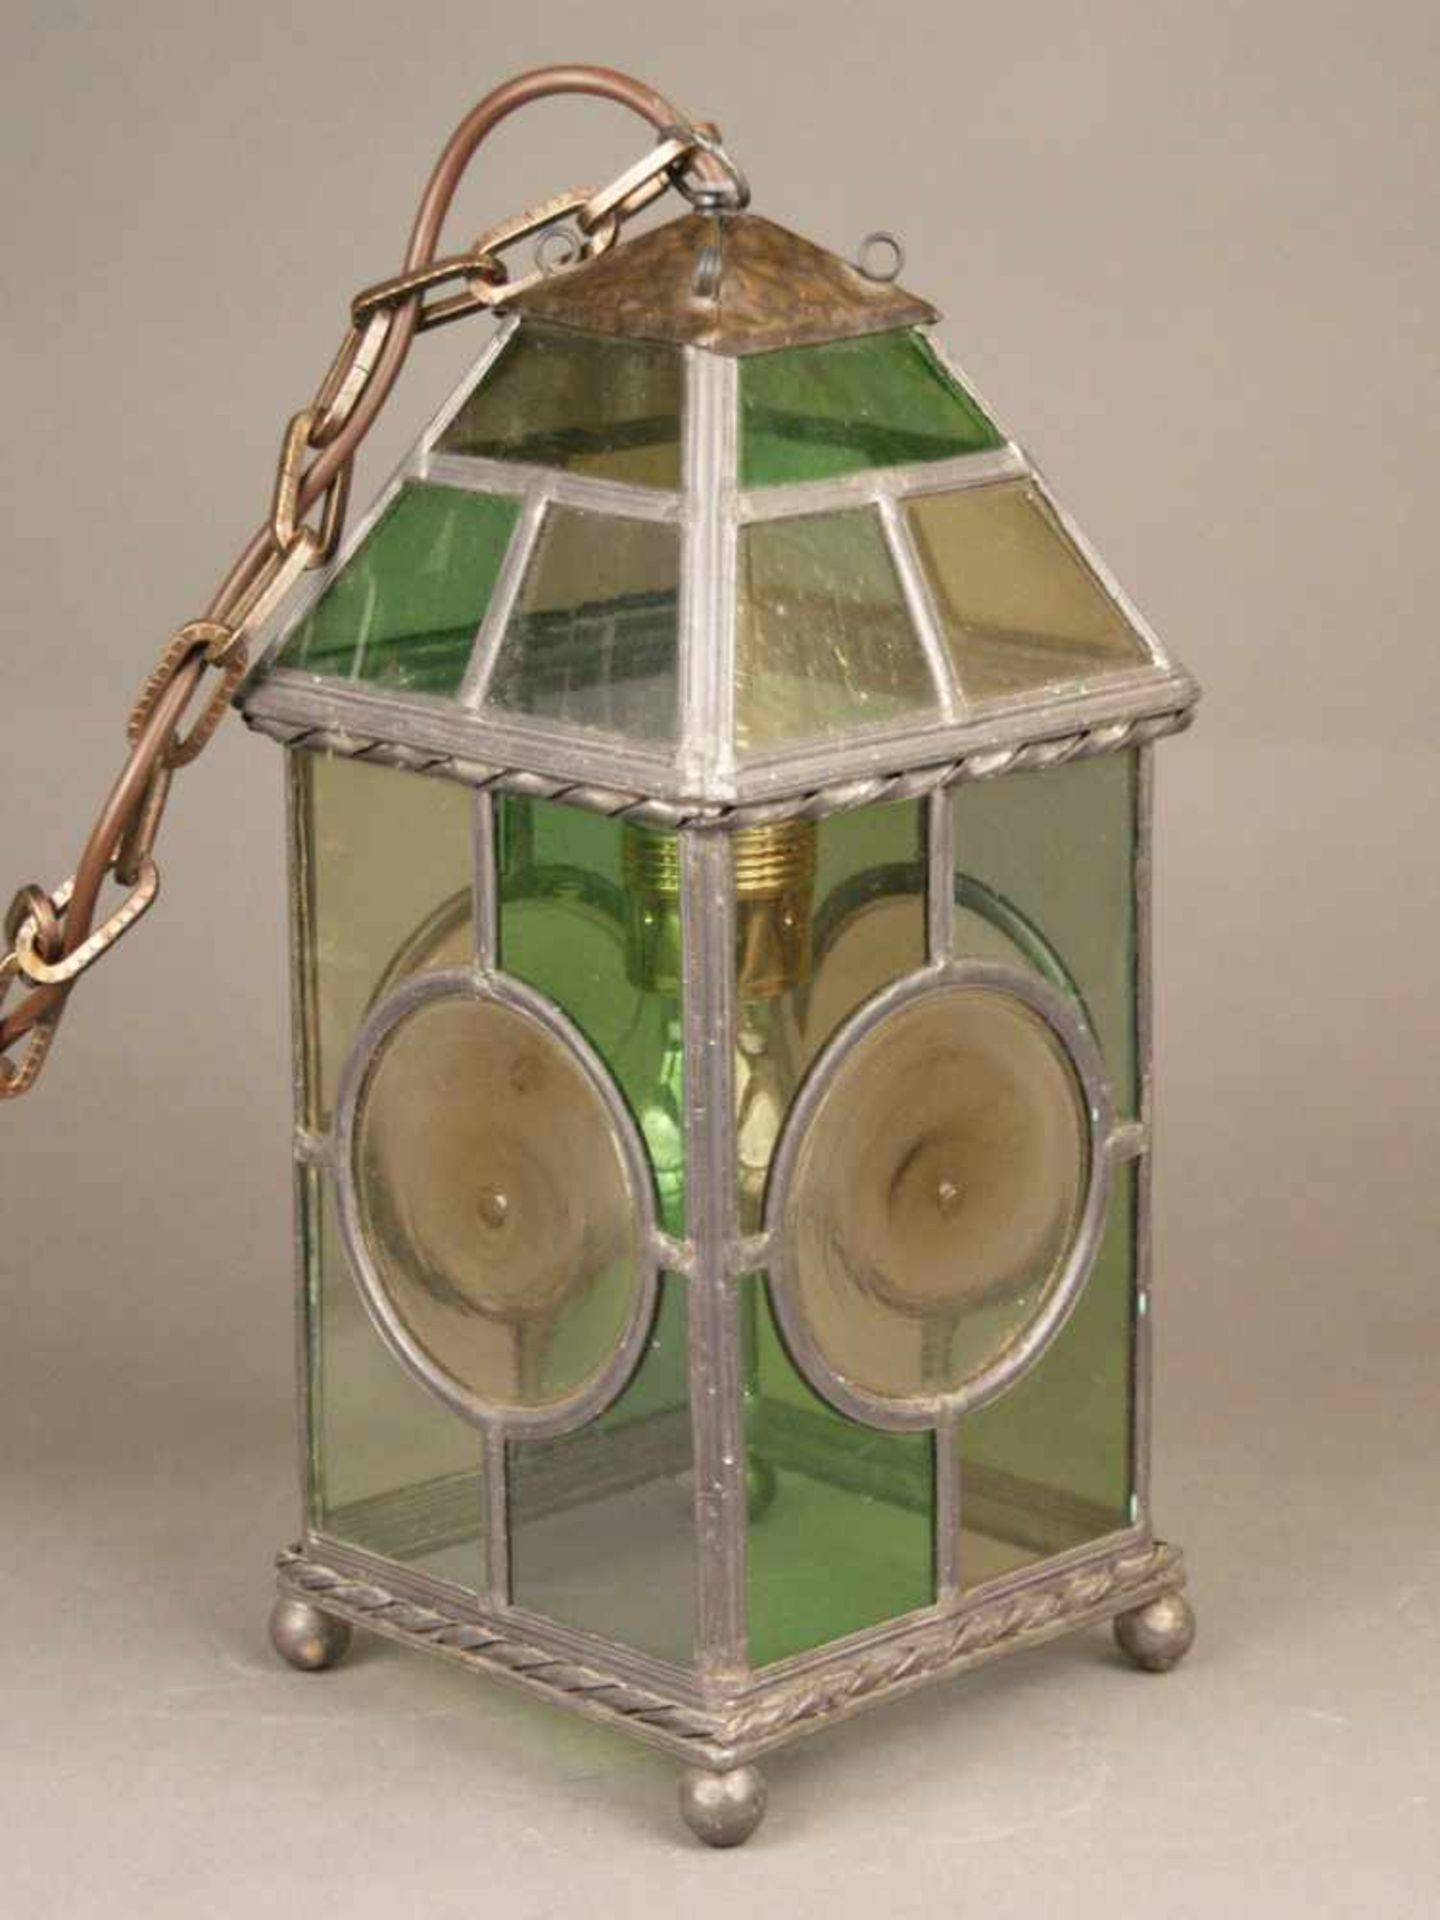 Deckenlampe mit Bleiverglasung - 1920er/30er Jahre, quadratischer Korpus mit geschrägtem Dach,